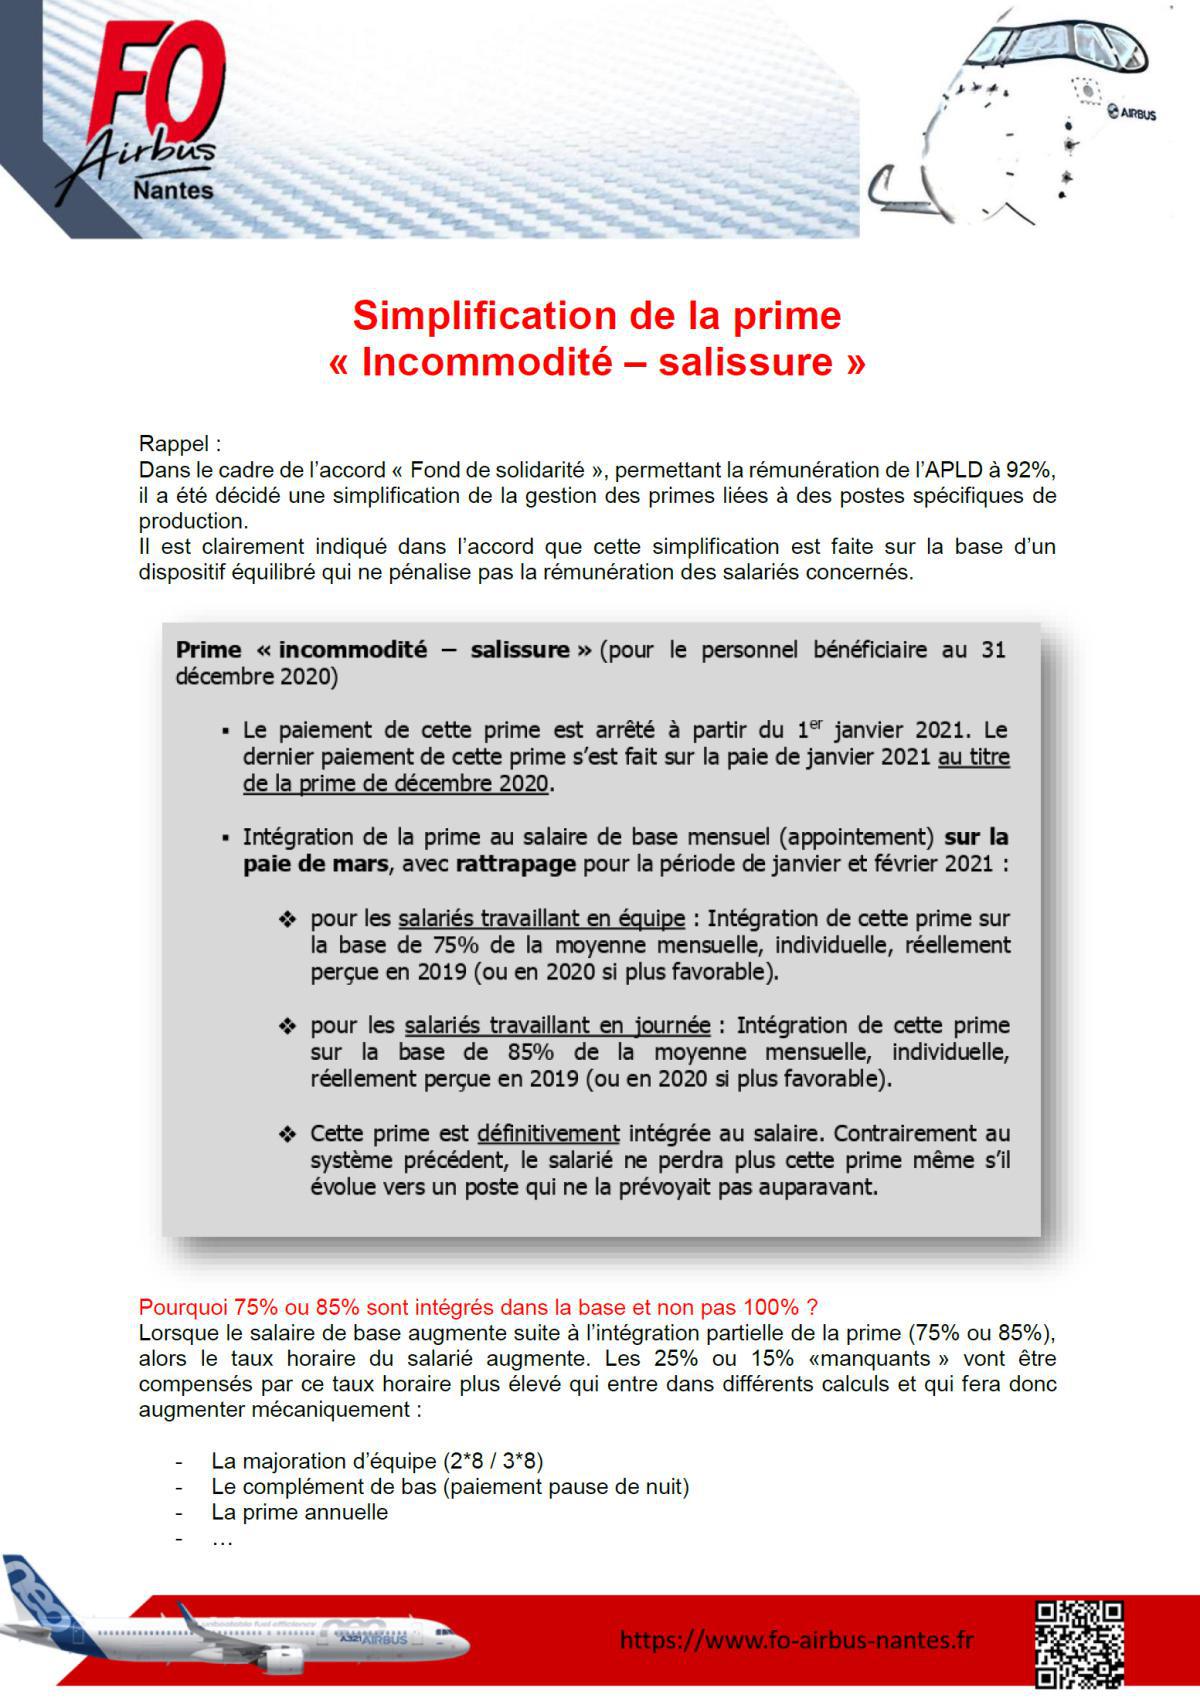 SIMPLIFICATION DE LA PRIME "incommodité - salissure"